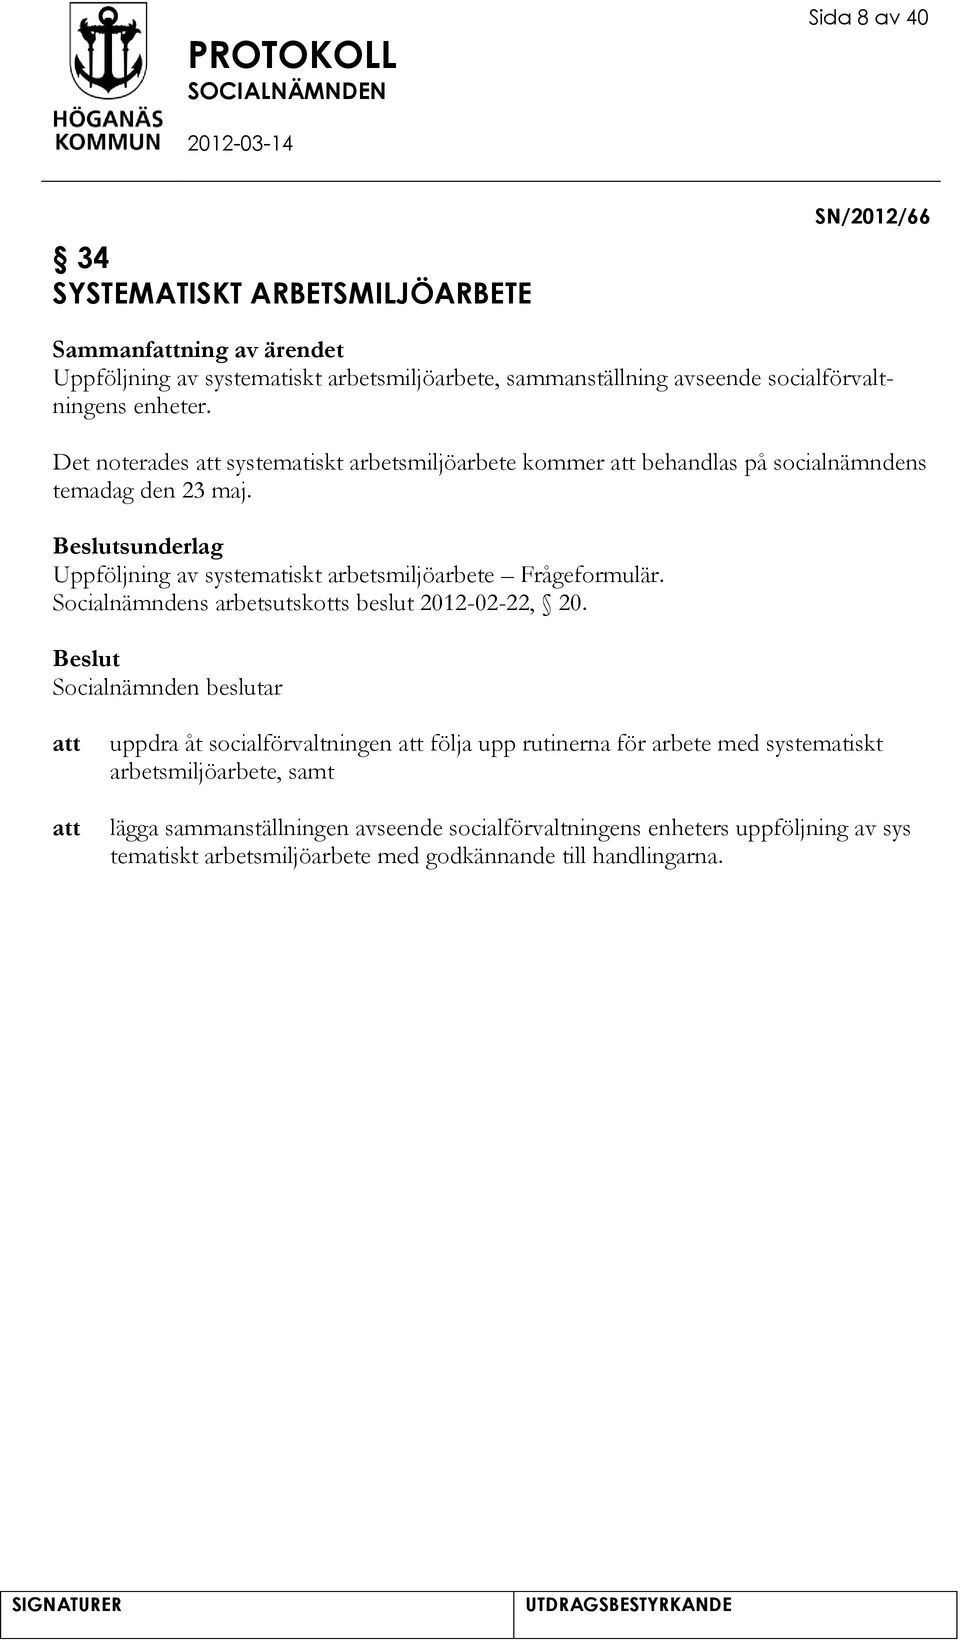 sunderlag Uppföljning av systematiskt arbetsmiljöarbete Frågeformulär. Socialnämndens arbetsutskotts beslut 2012-02-22, 20.